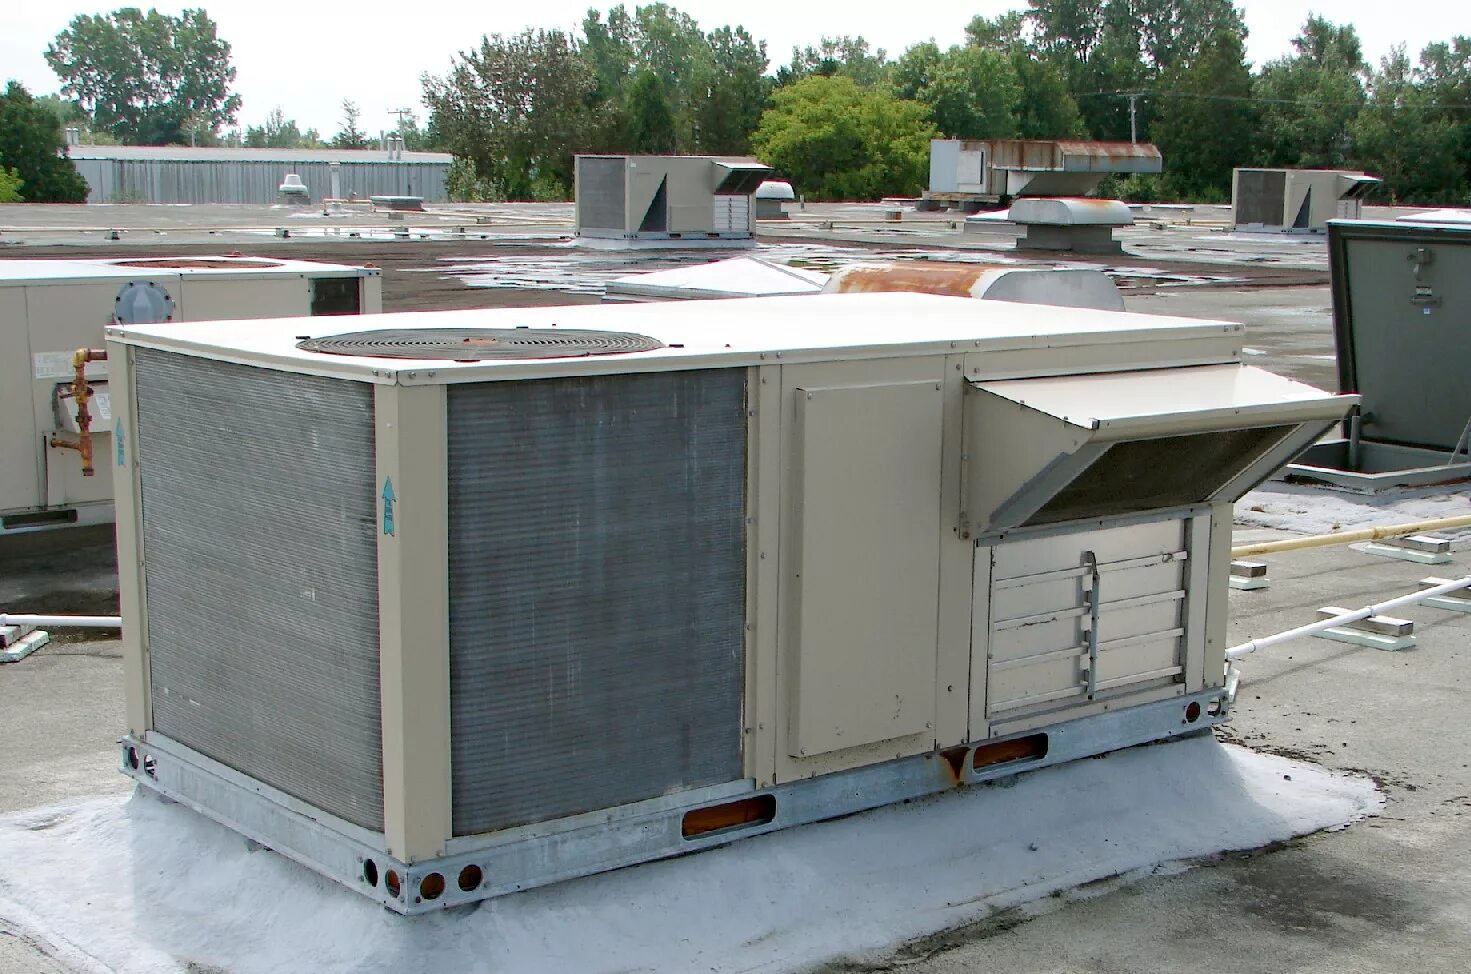 Холодильное вентиляционное оборудование. Крышные кондиционеры руфтопы. Крышные кондиционеры (Rooftop). Руфтопы Имбат. Крышный кондиционер (Руфтоп) York DMS 100c00a4dghrs11.